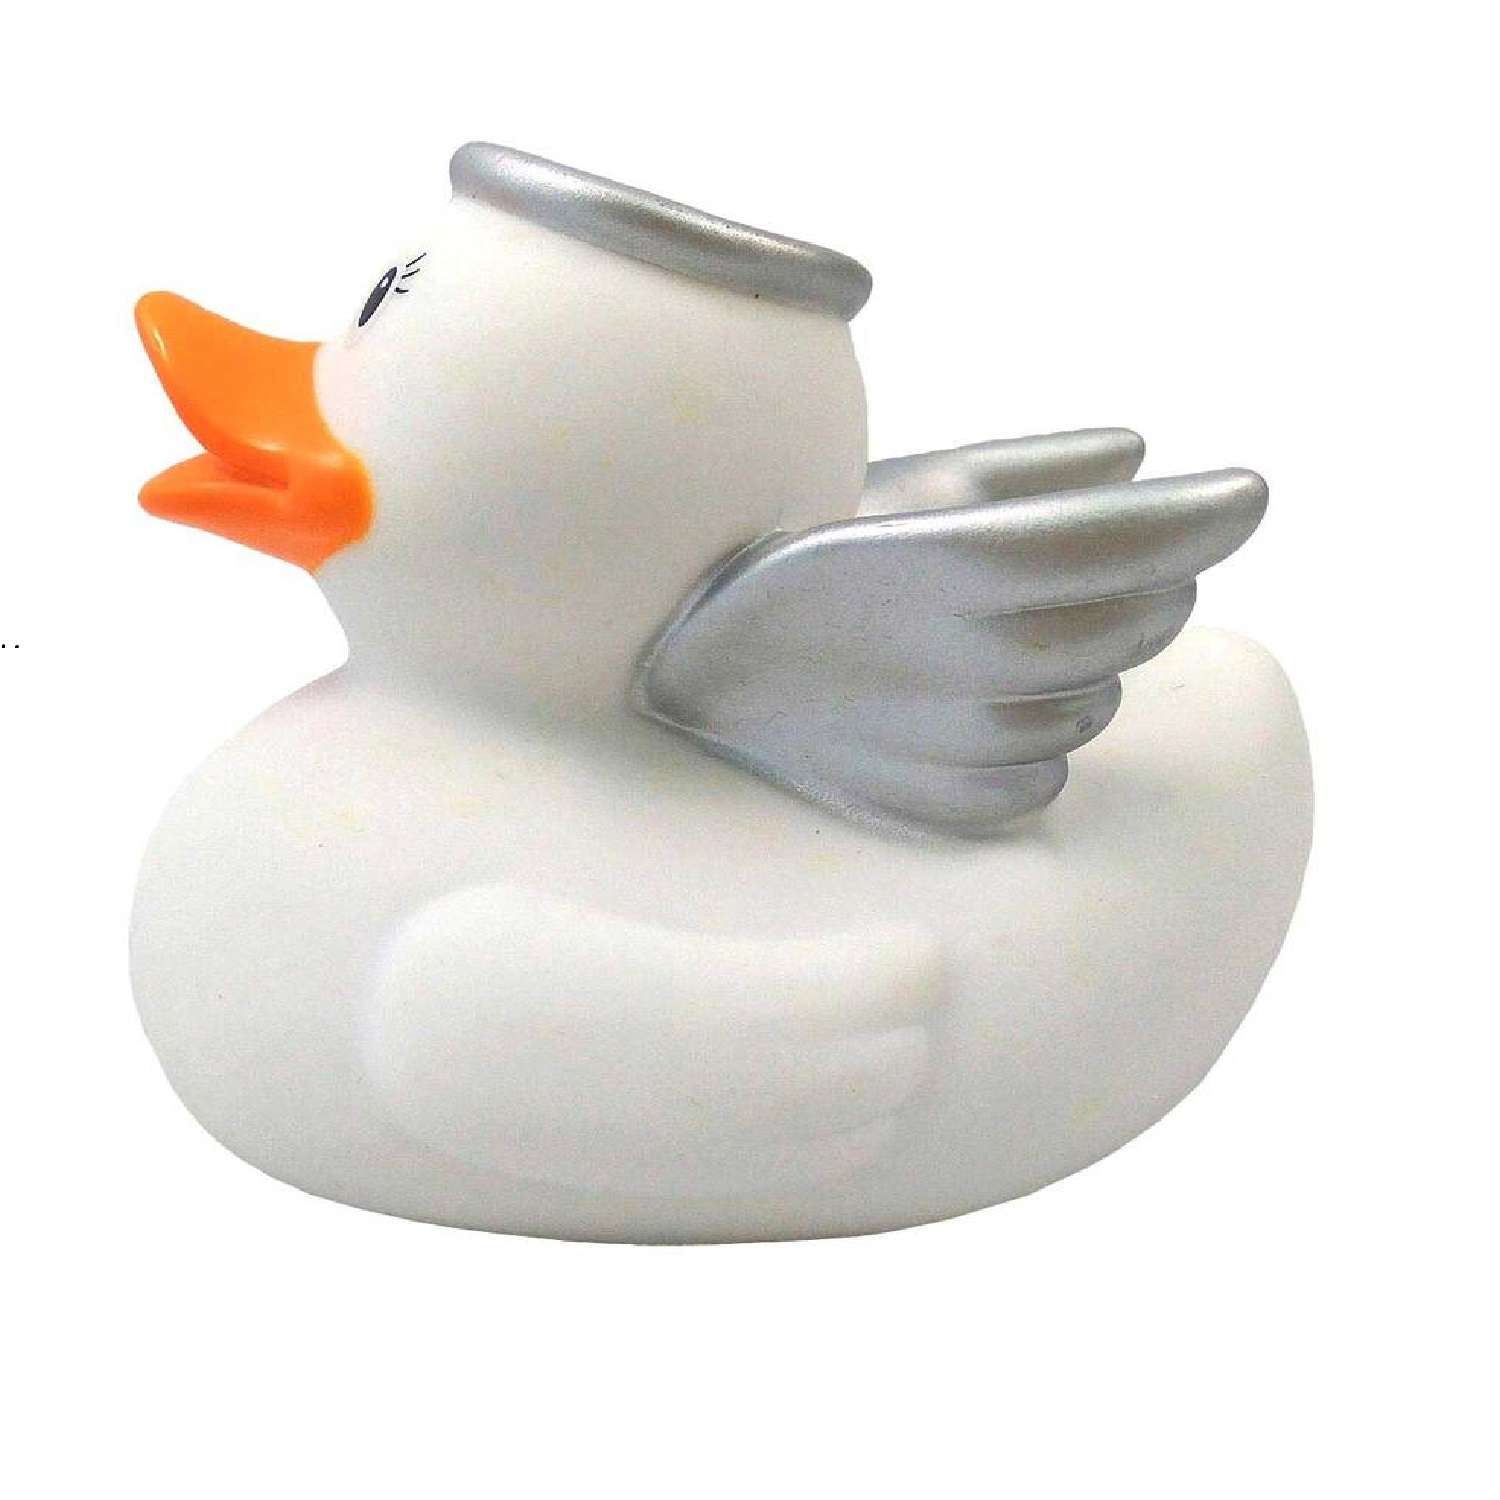 Игрушка Funny ducks для ванной Ангел уточка 1824 - фото 3